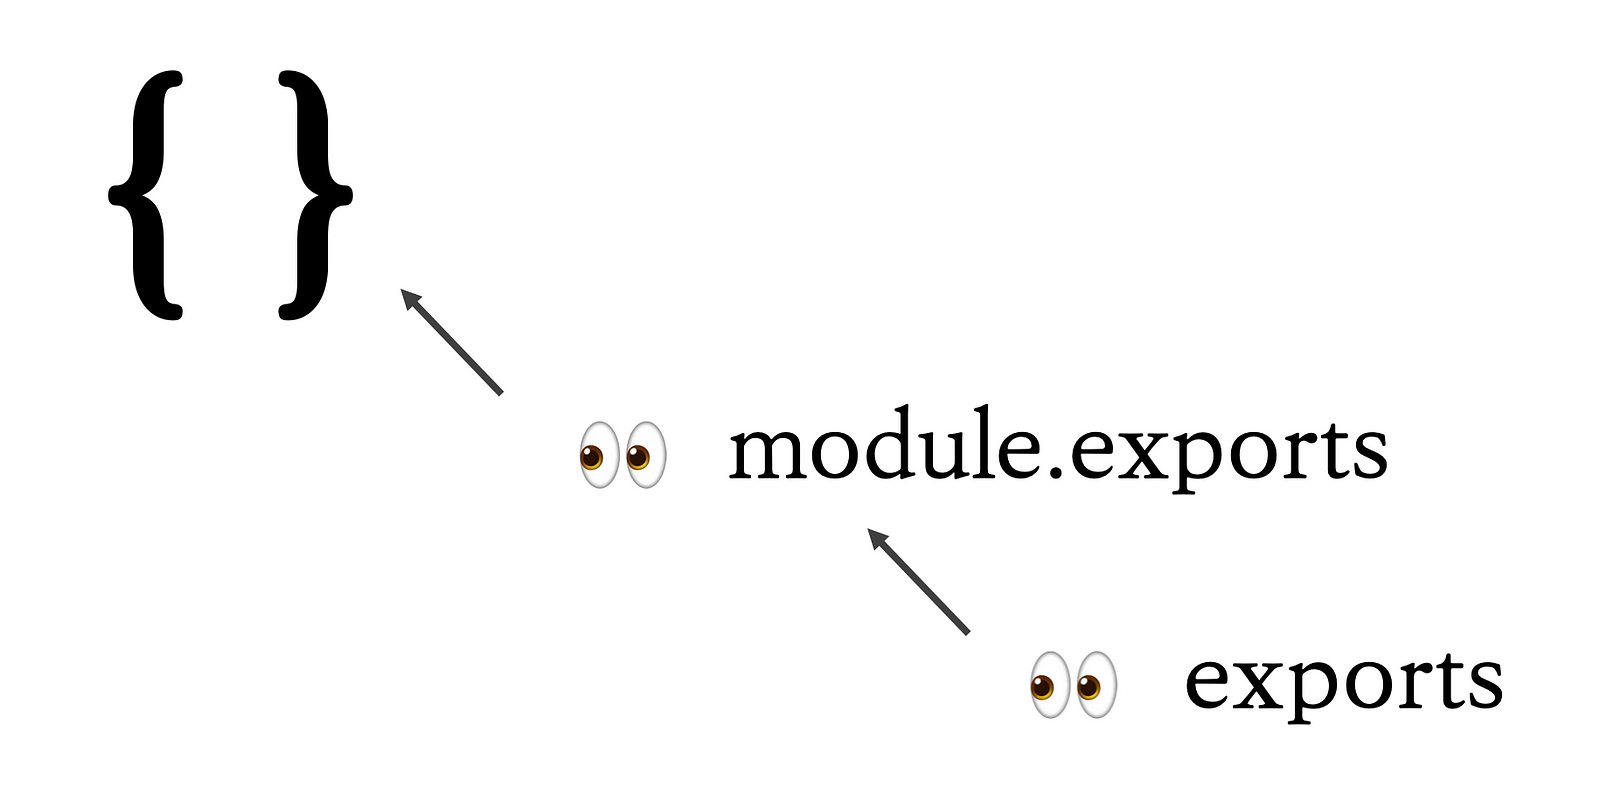 module.exports vs exports